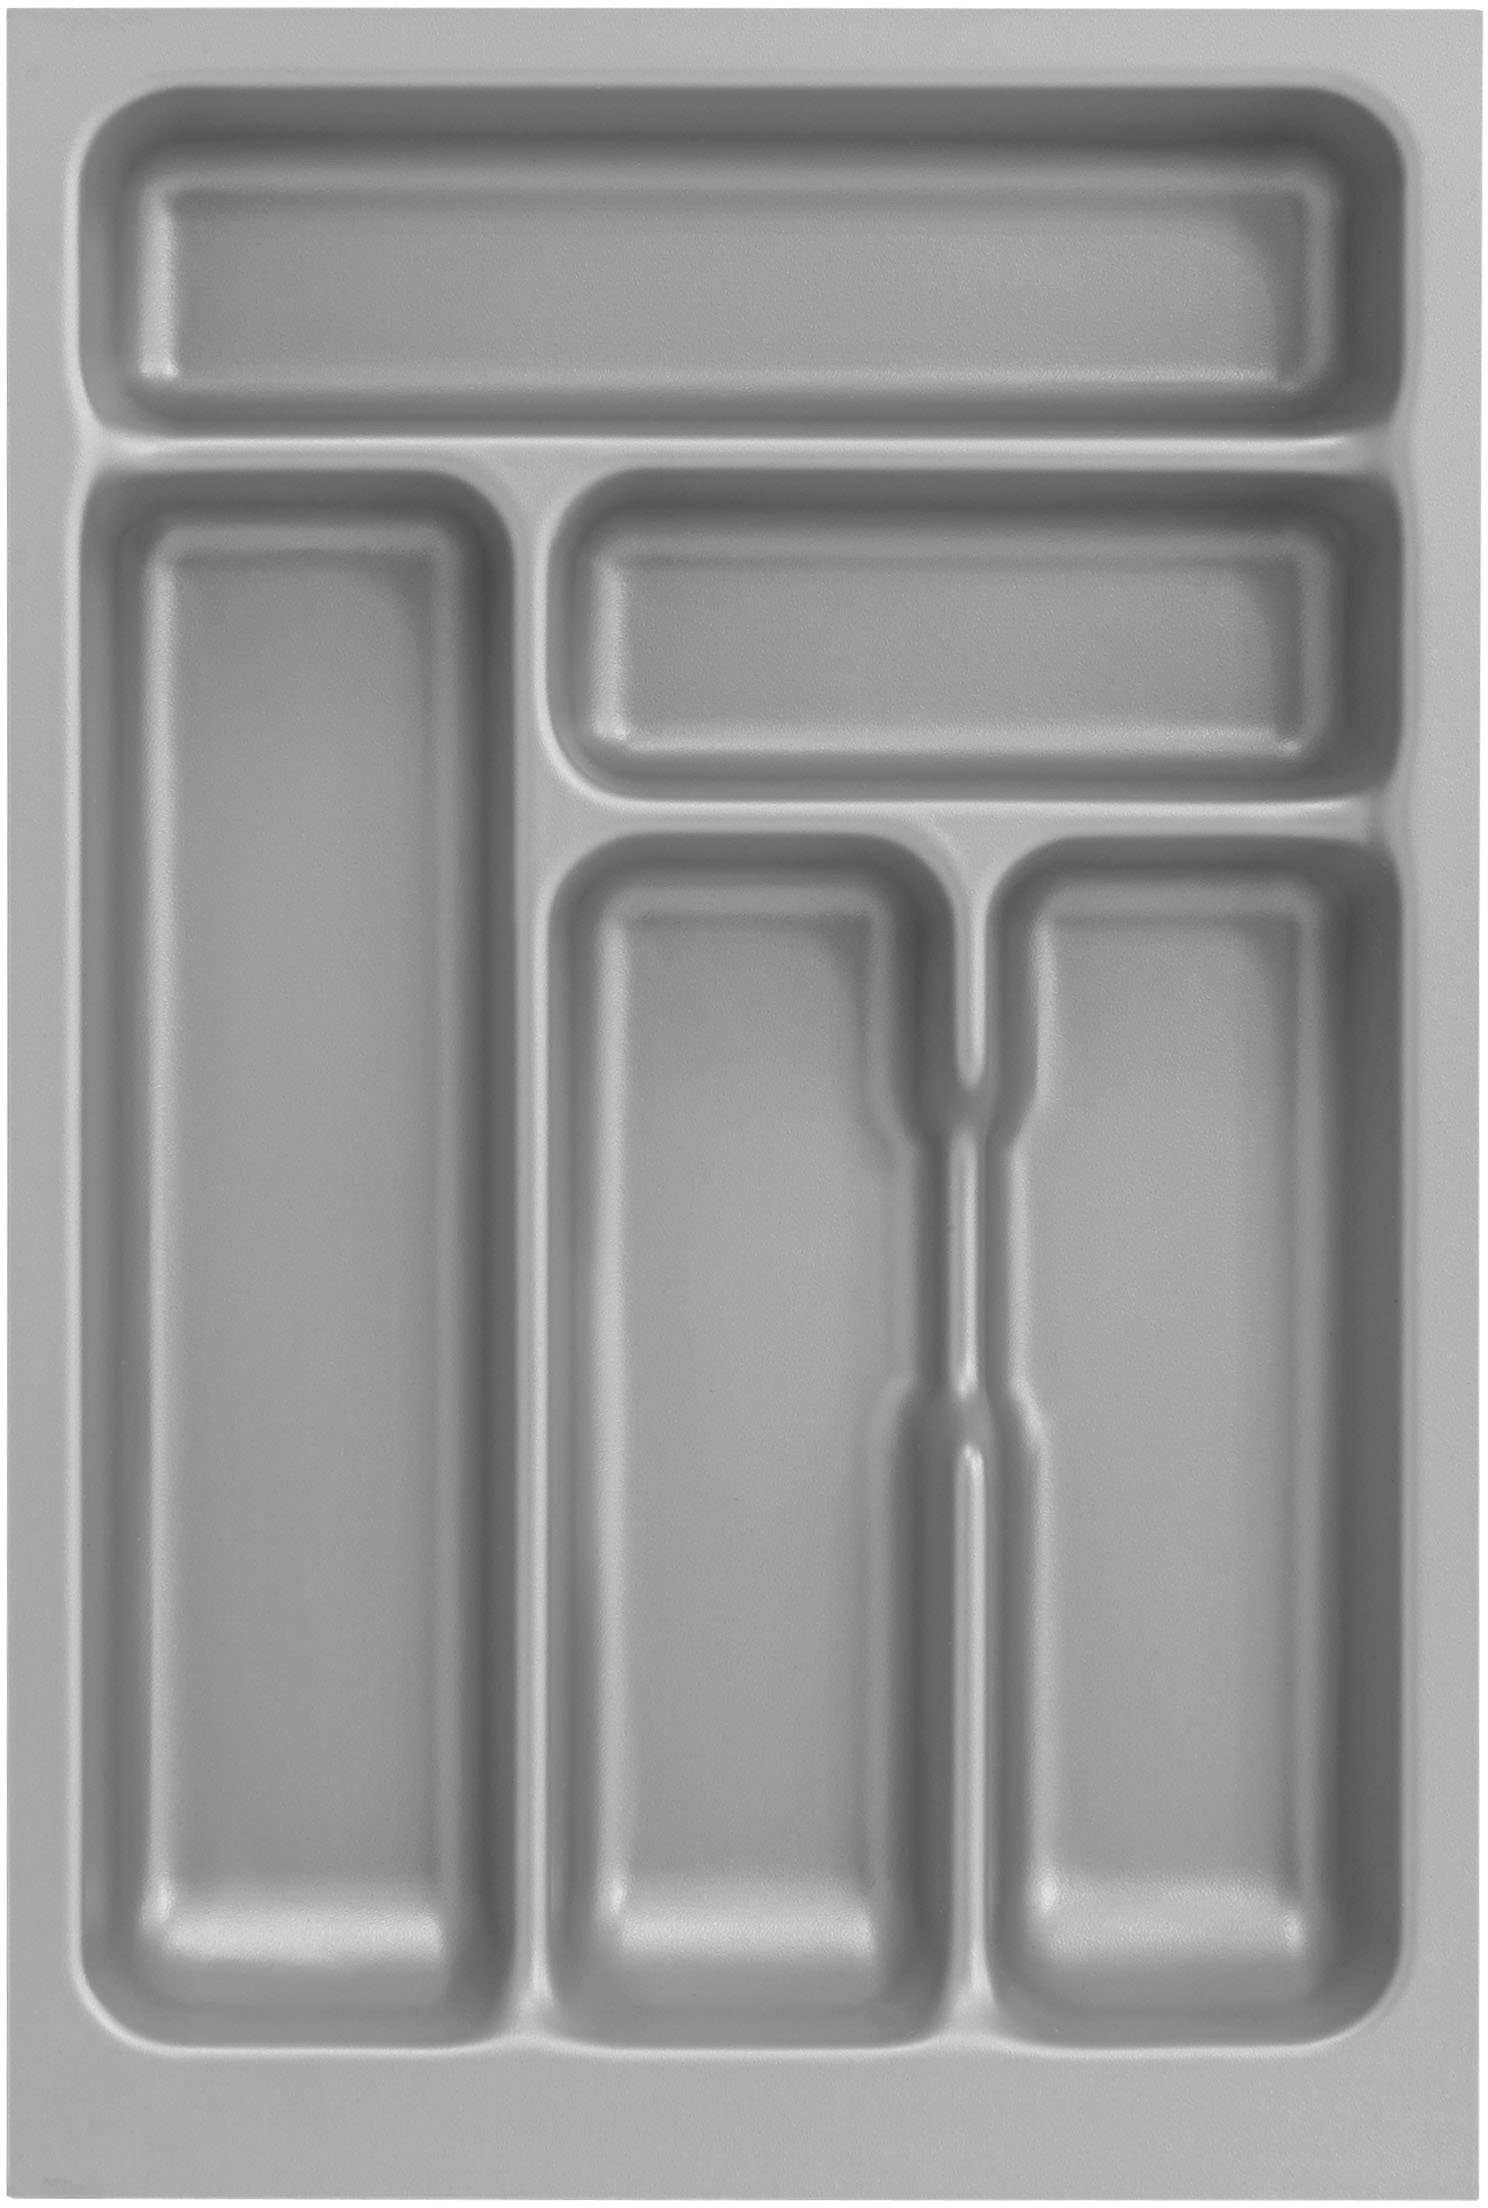 OPTIFIT Küche Safeli, Breite wahlweise oder mit weiß/weiß-wildeiche 210 | Hanseatic-E-Geräte ohne weiß cm